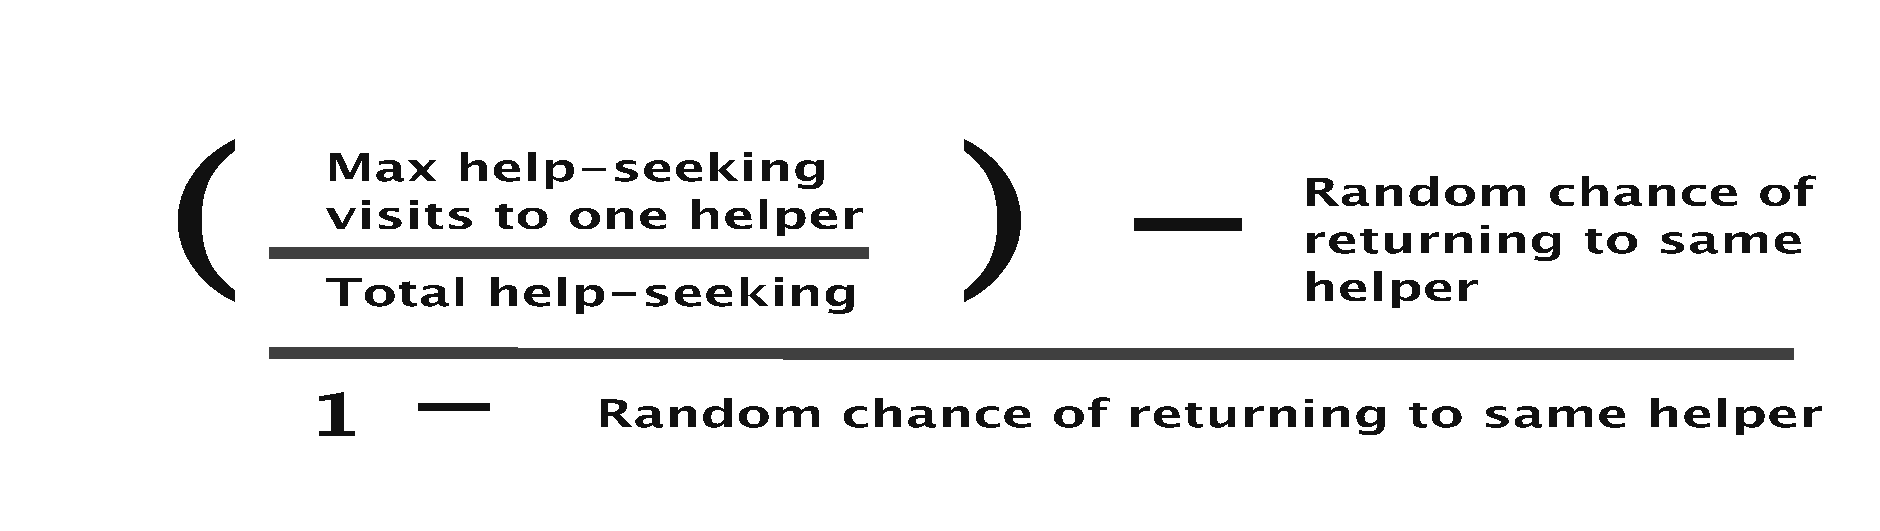 ((Max help-seeking visits to one helper / Total help-seeking) - Random chance of returning to same helper) / (1 - Random chance of returning to same helper)